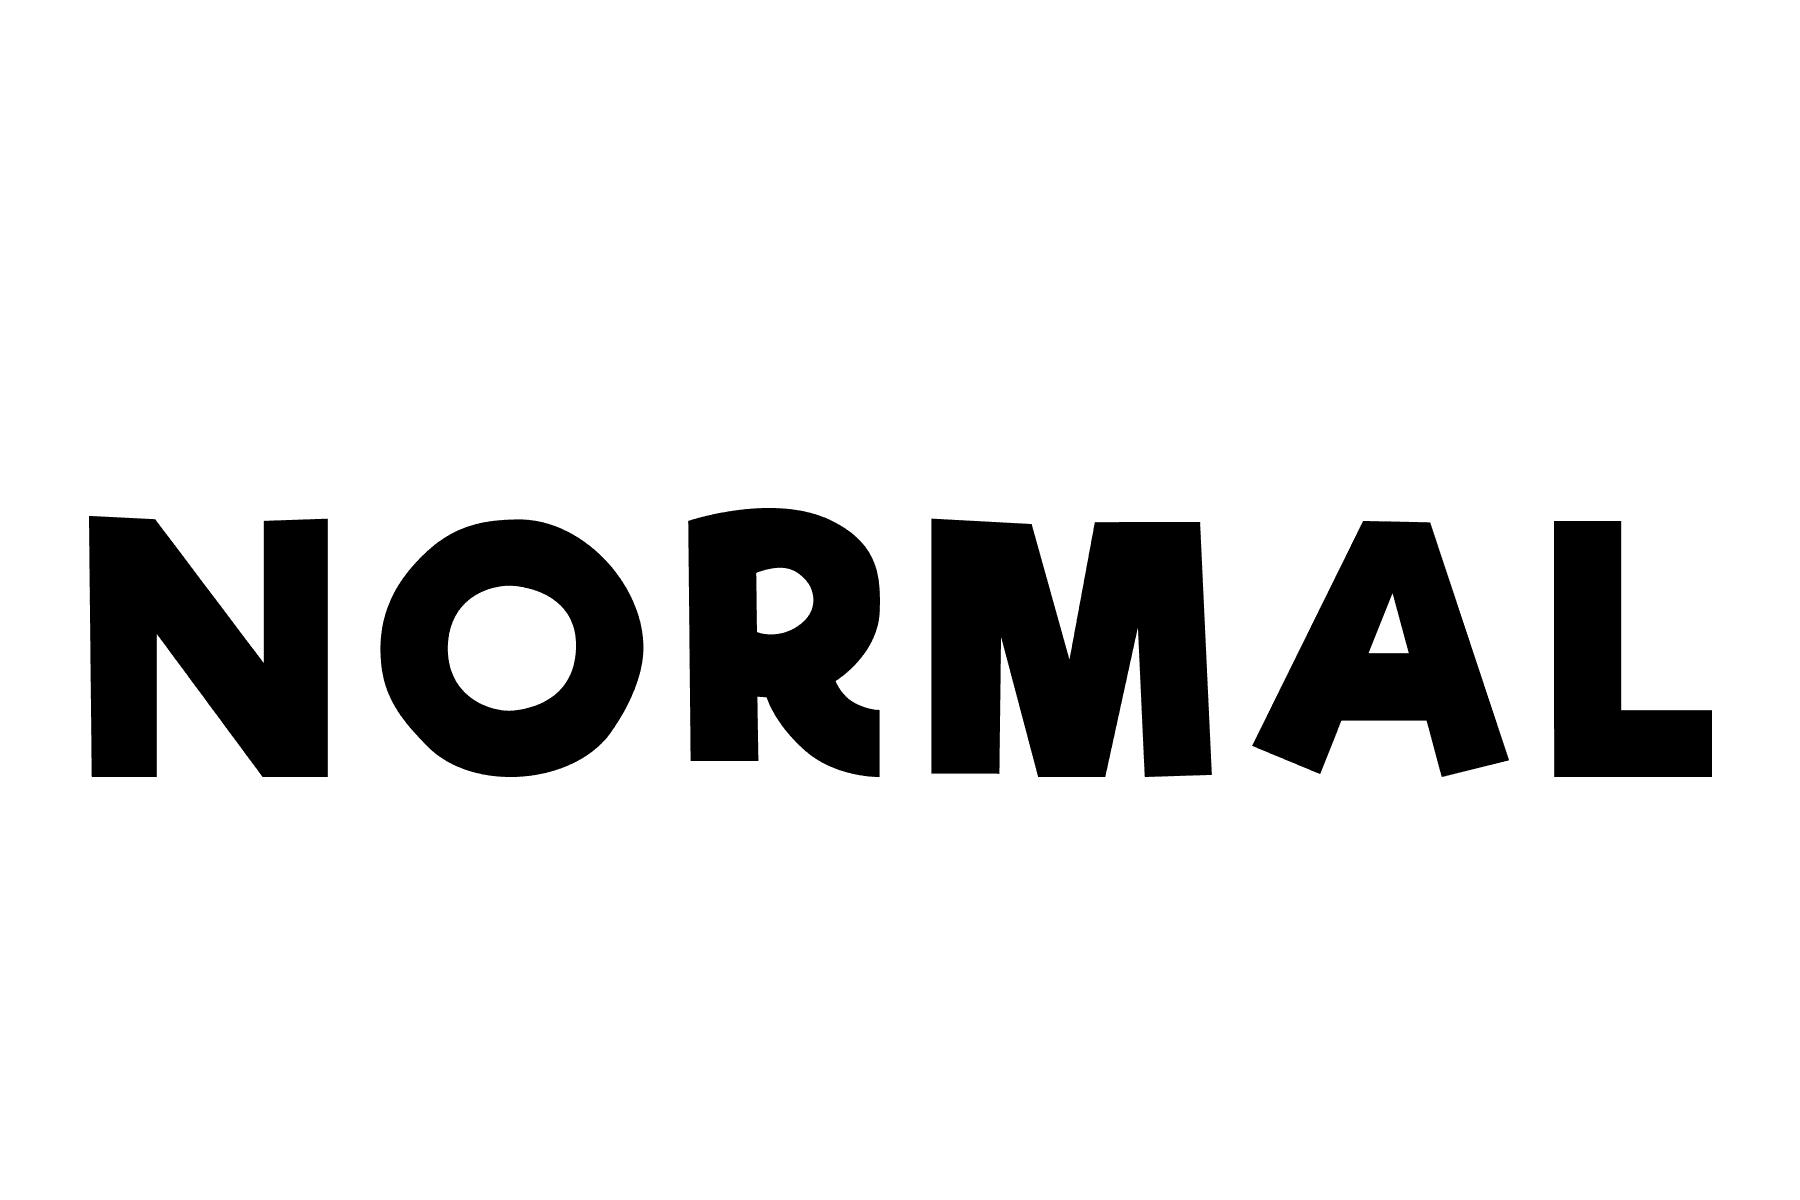 NORMAL_normal & CHAOS_chaos